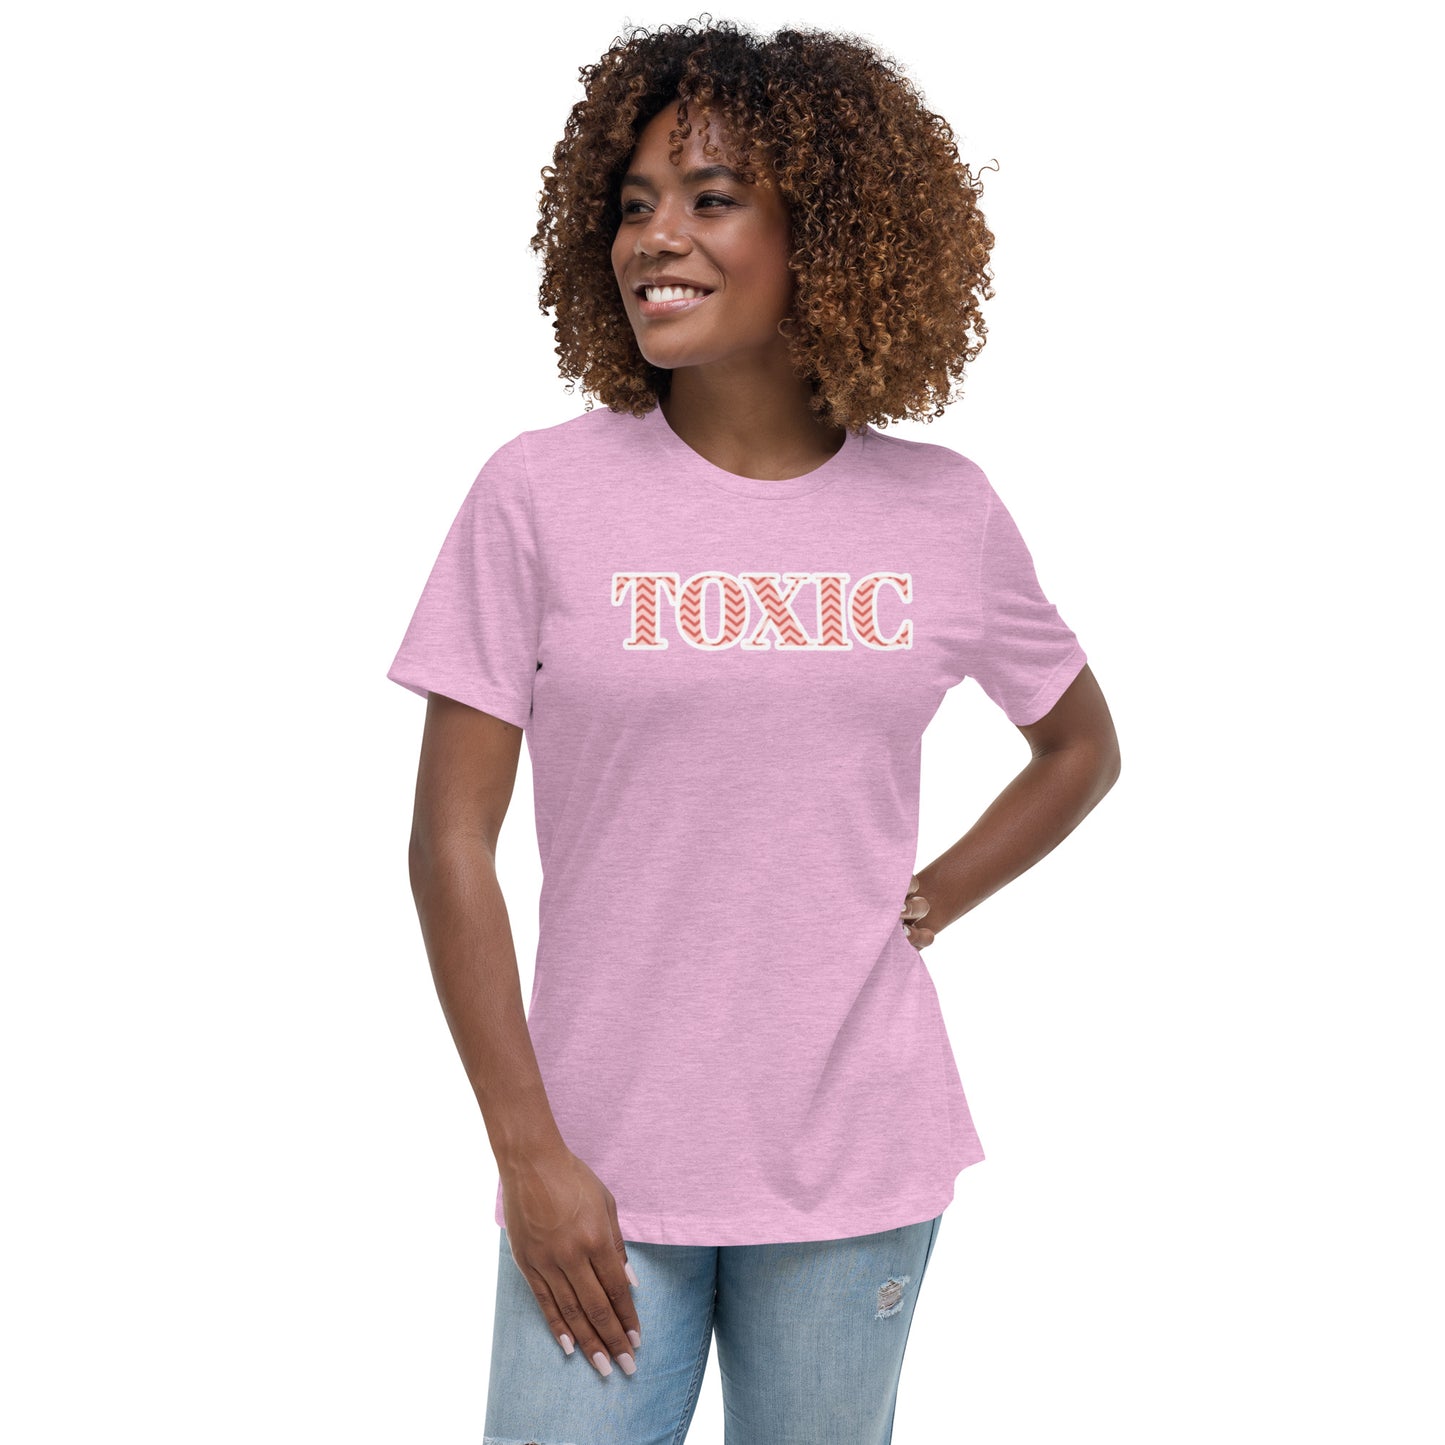 Toxic Women's Relaxed T-Shirt